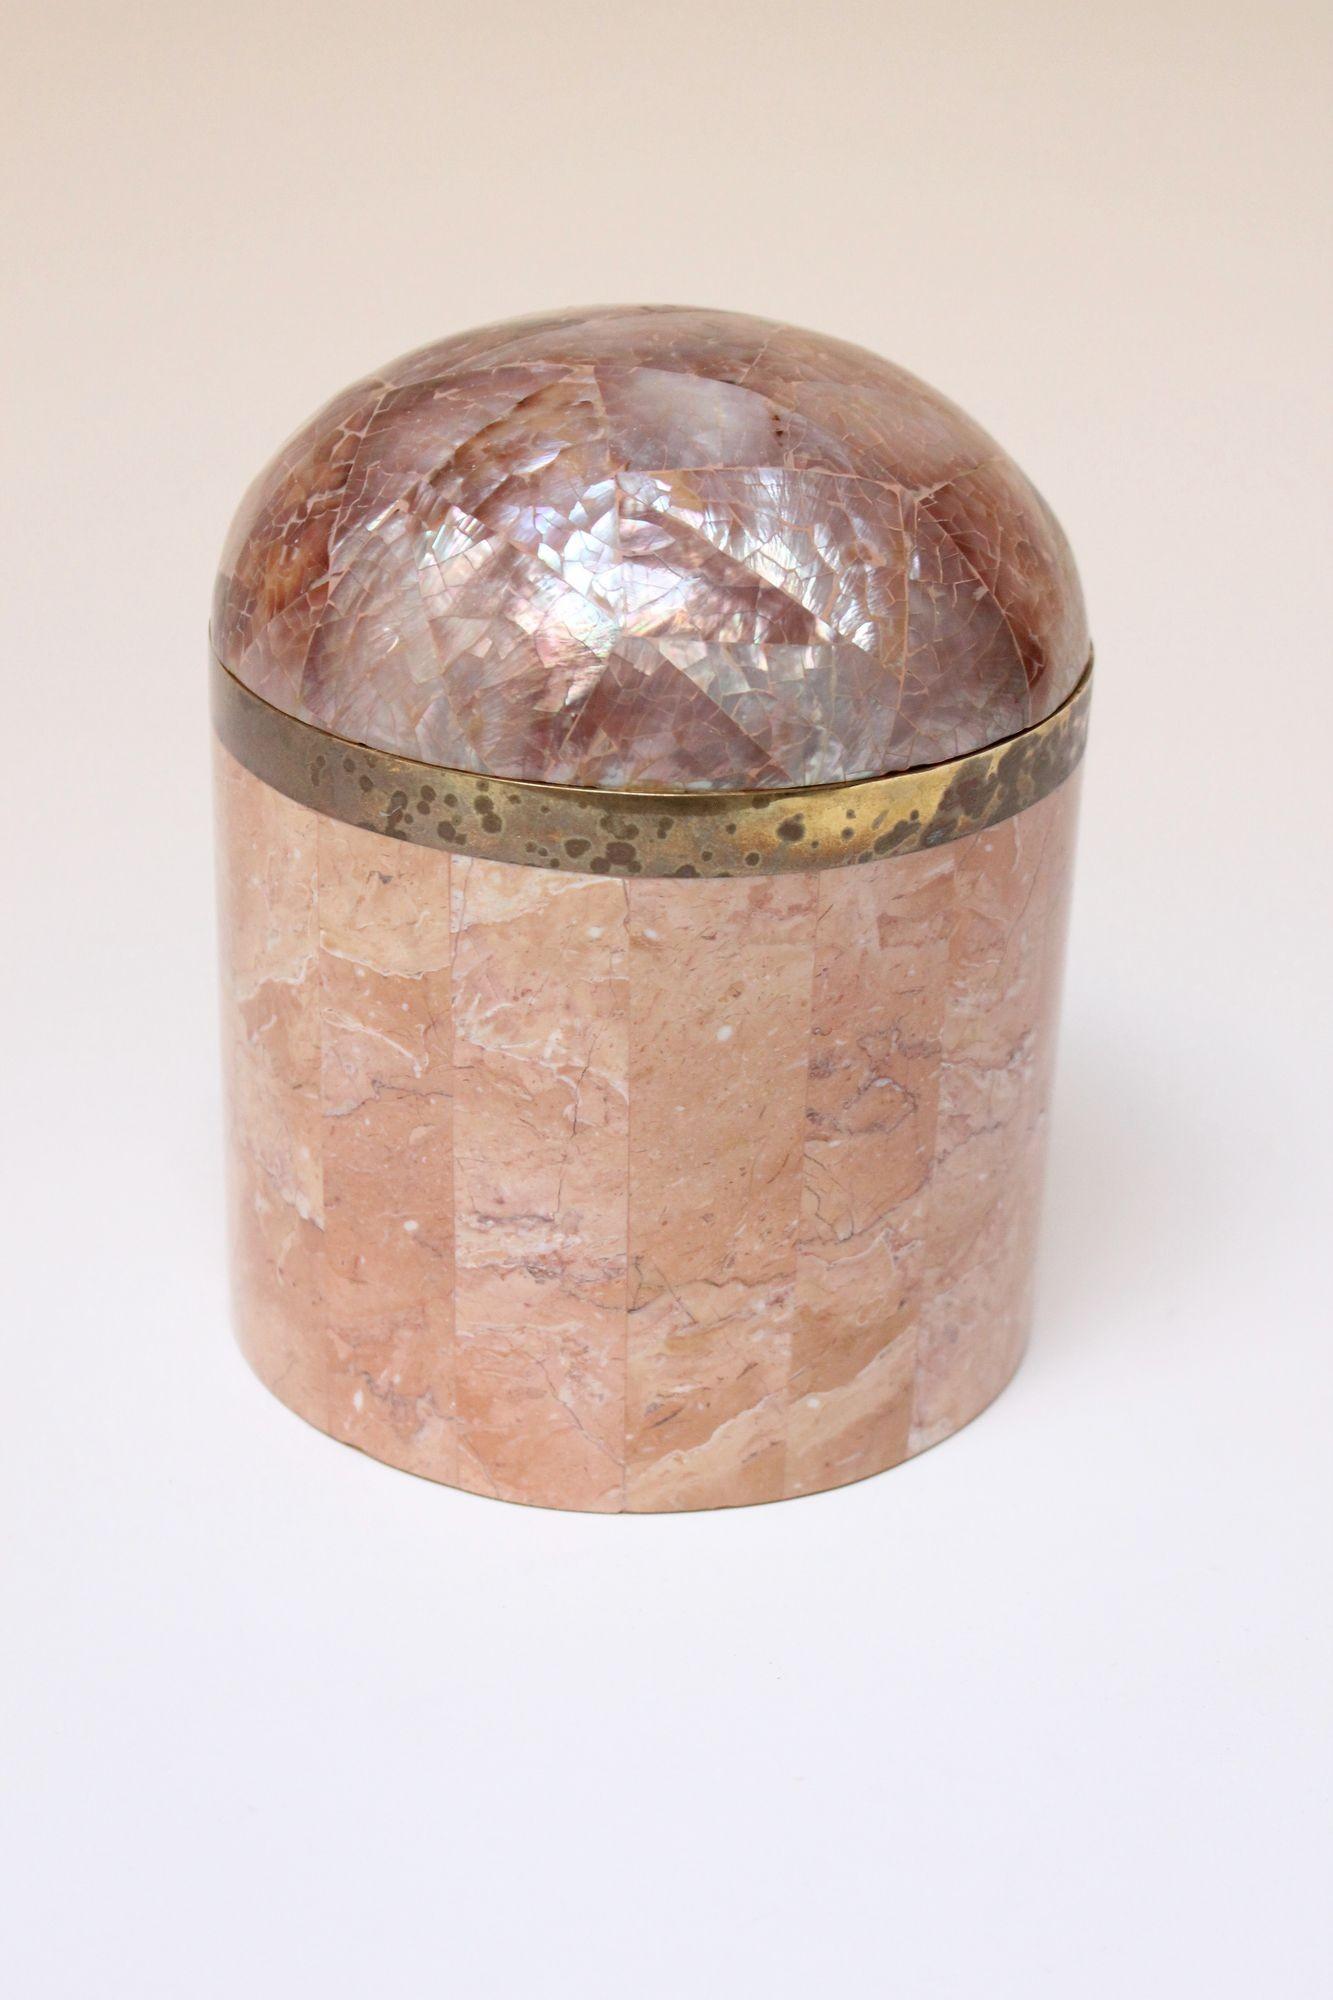 Boîte à bibelots vintage de style Maitland Smith ou Robert Marcius (vers les années 1980, États-Unis).
La boîte/jarre est composée d'une pierre corallienne rose tessellée, d'une quincaillerie en laiton et d'un couvercle bombé en coquille d'ormeau